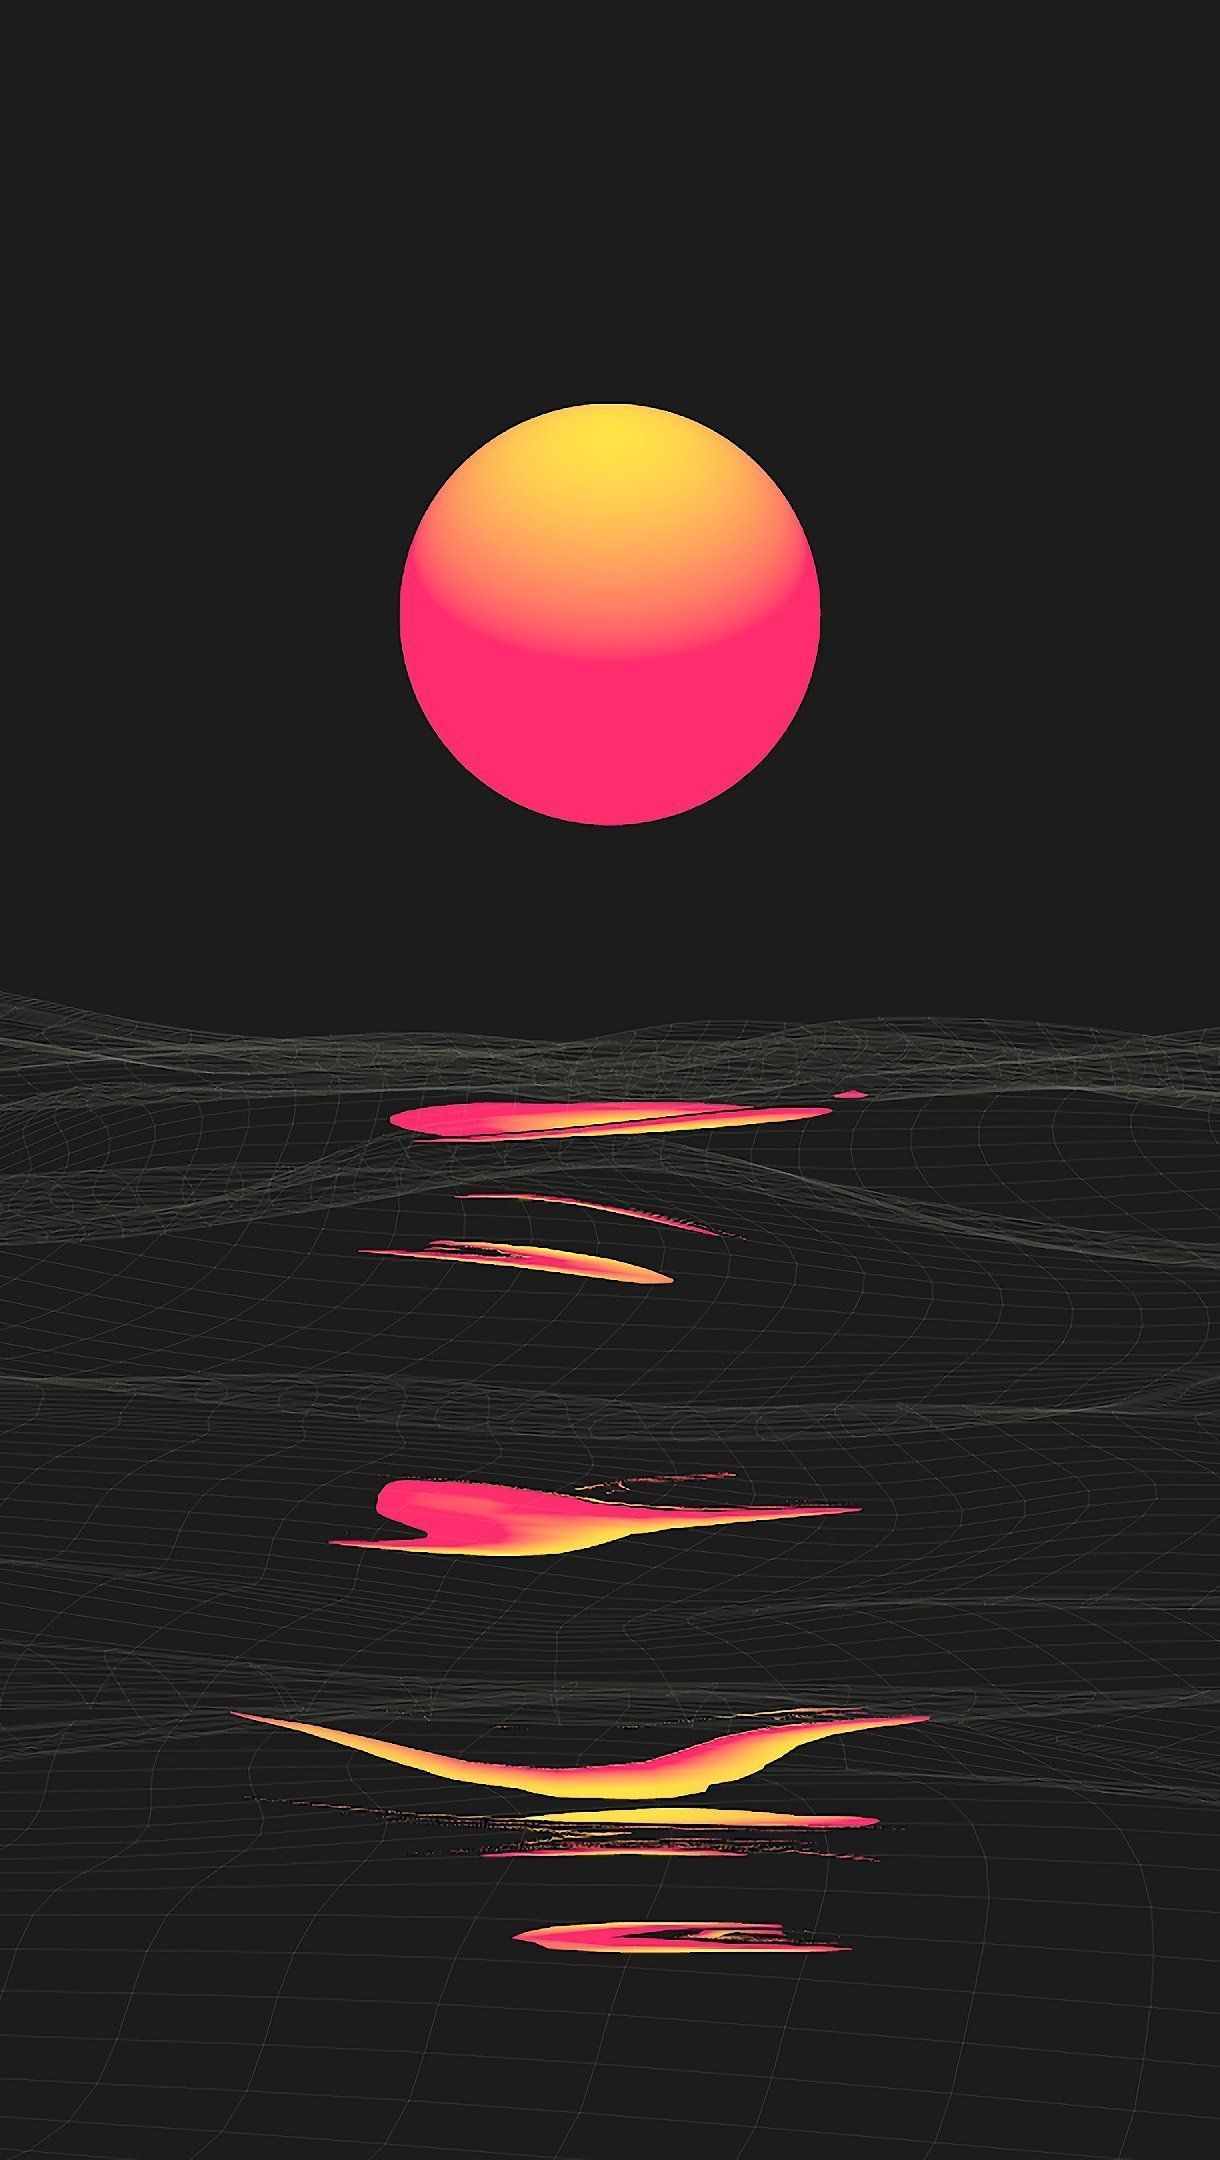 Abstract sun desert Wallpaper 4k Ultra HD